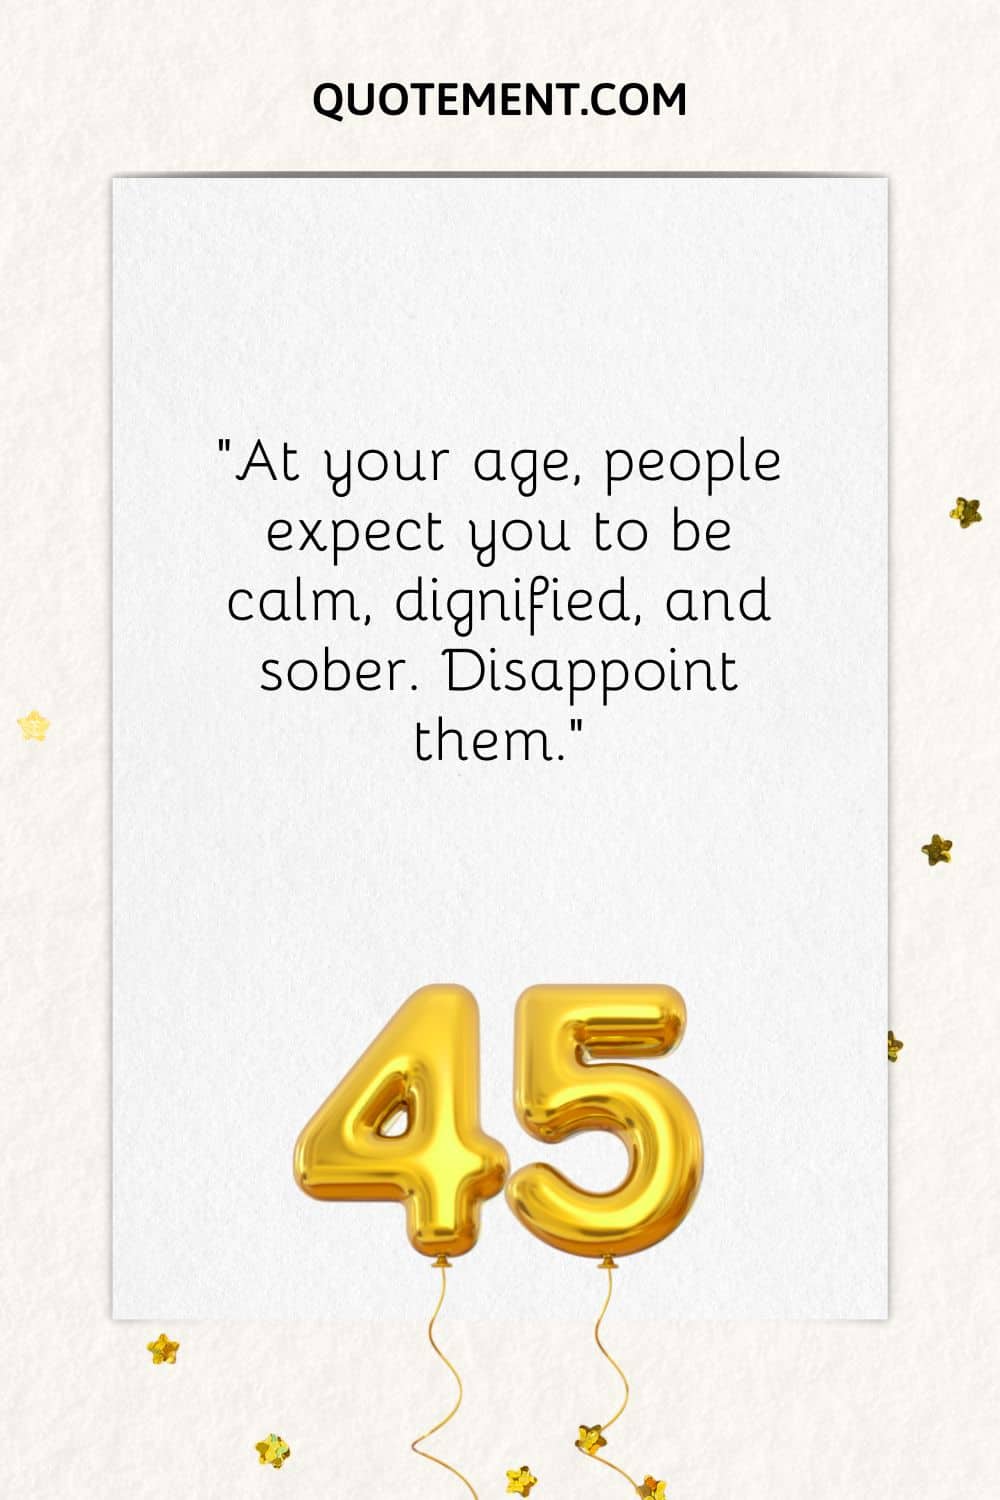 "A tu edad, la gente espera que seas tranquilo, digno y sobrio. Decepciónalos".